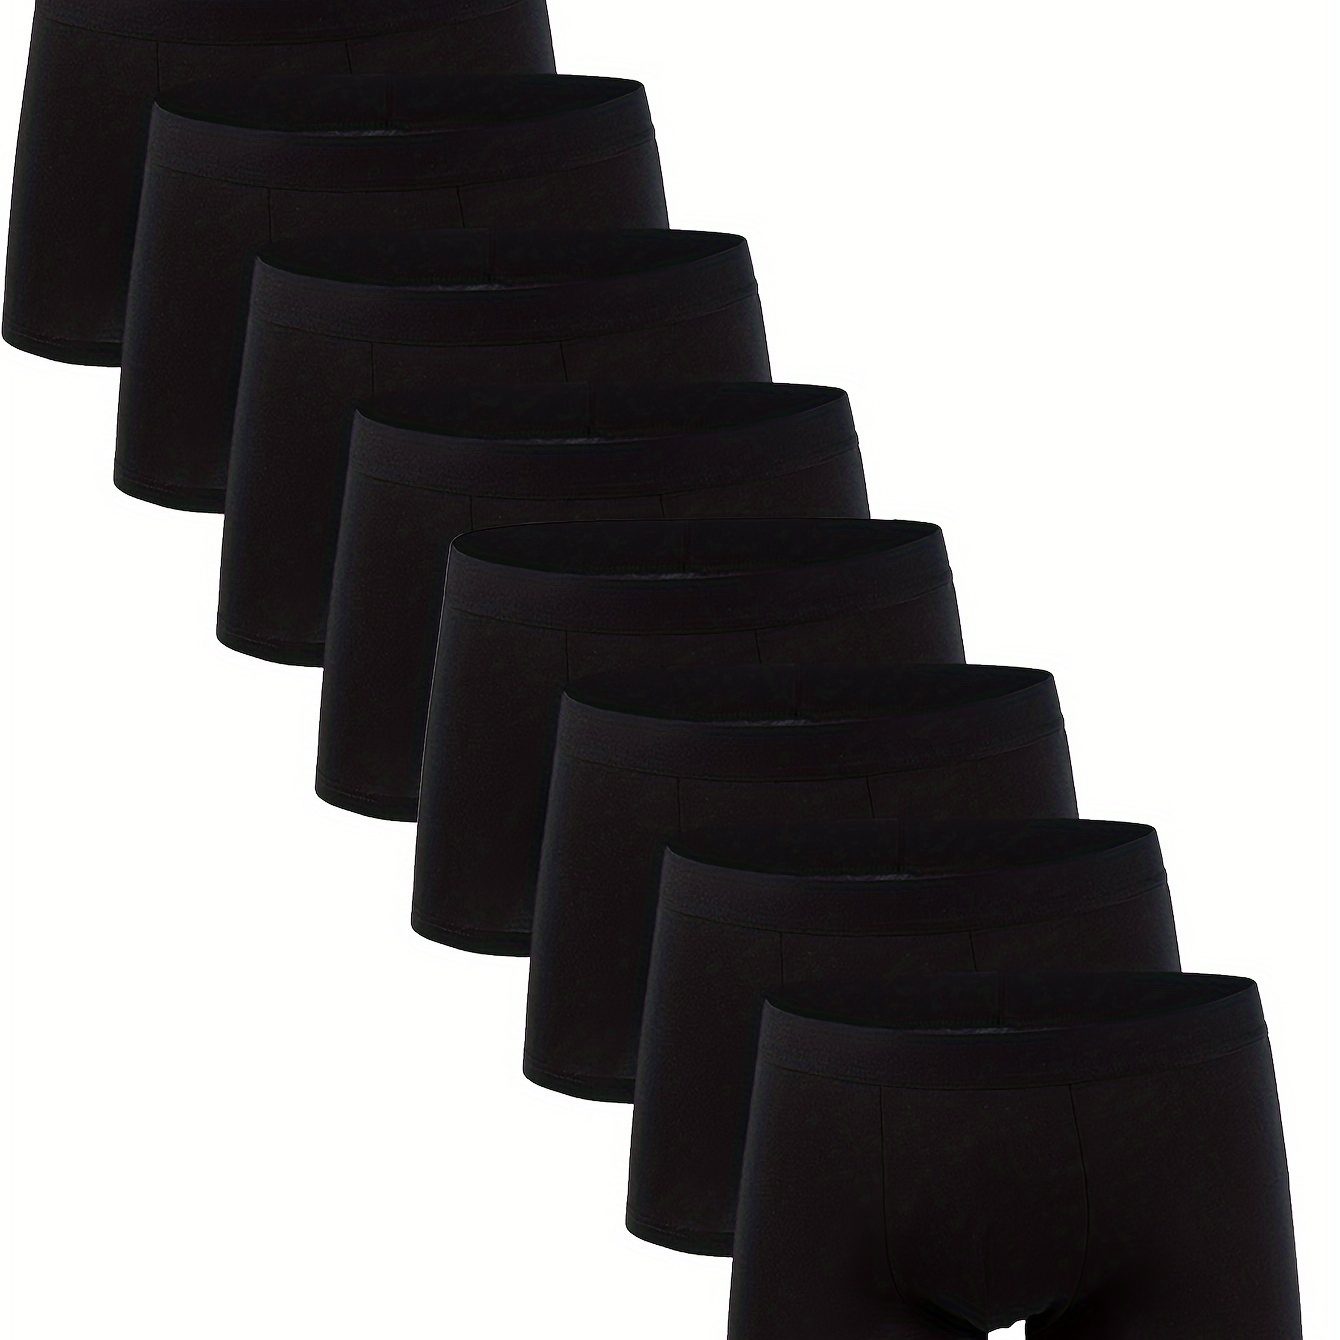 

4/5/6/8/12pcs Men's Casual Plain Color Breathable 95% Cotton Stretchy Quick Drying Comfy Boxer Briefs Underwear